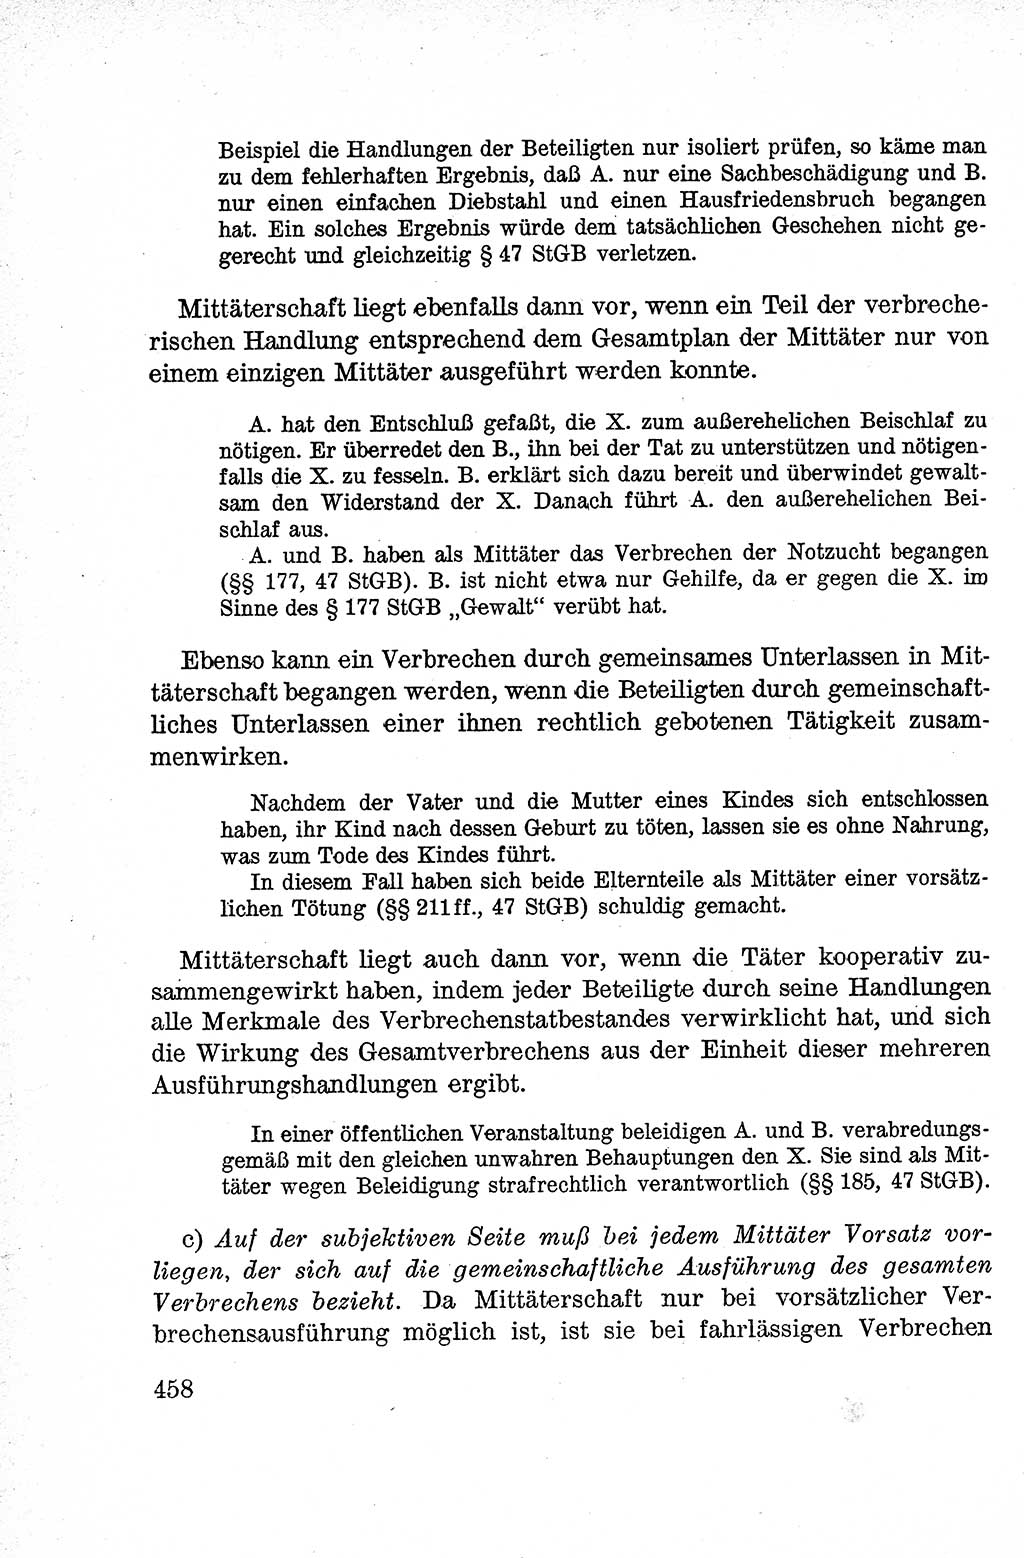 Lehrbuch des Strafrechts der Deutschen Demokratischen Republik (DDR), Allgemeiner Teil 1959, Seite 458 (Lb. Strafr. DDR AT 1959, S. 458)